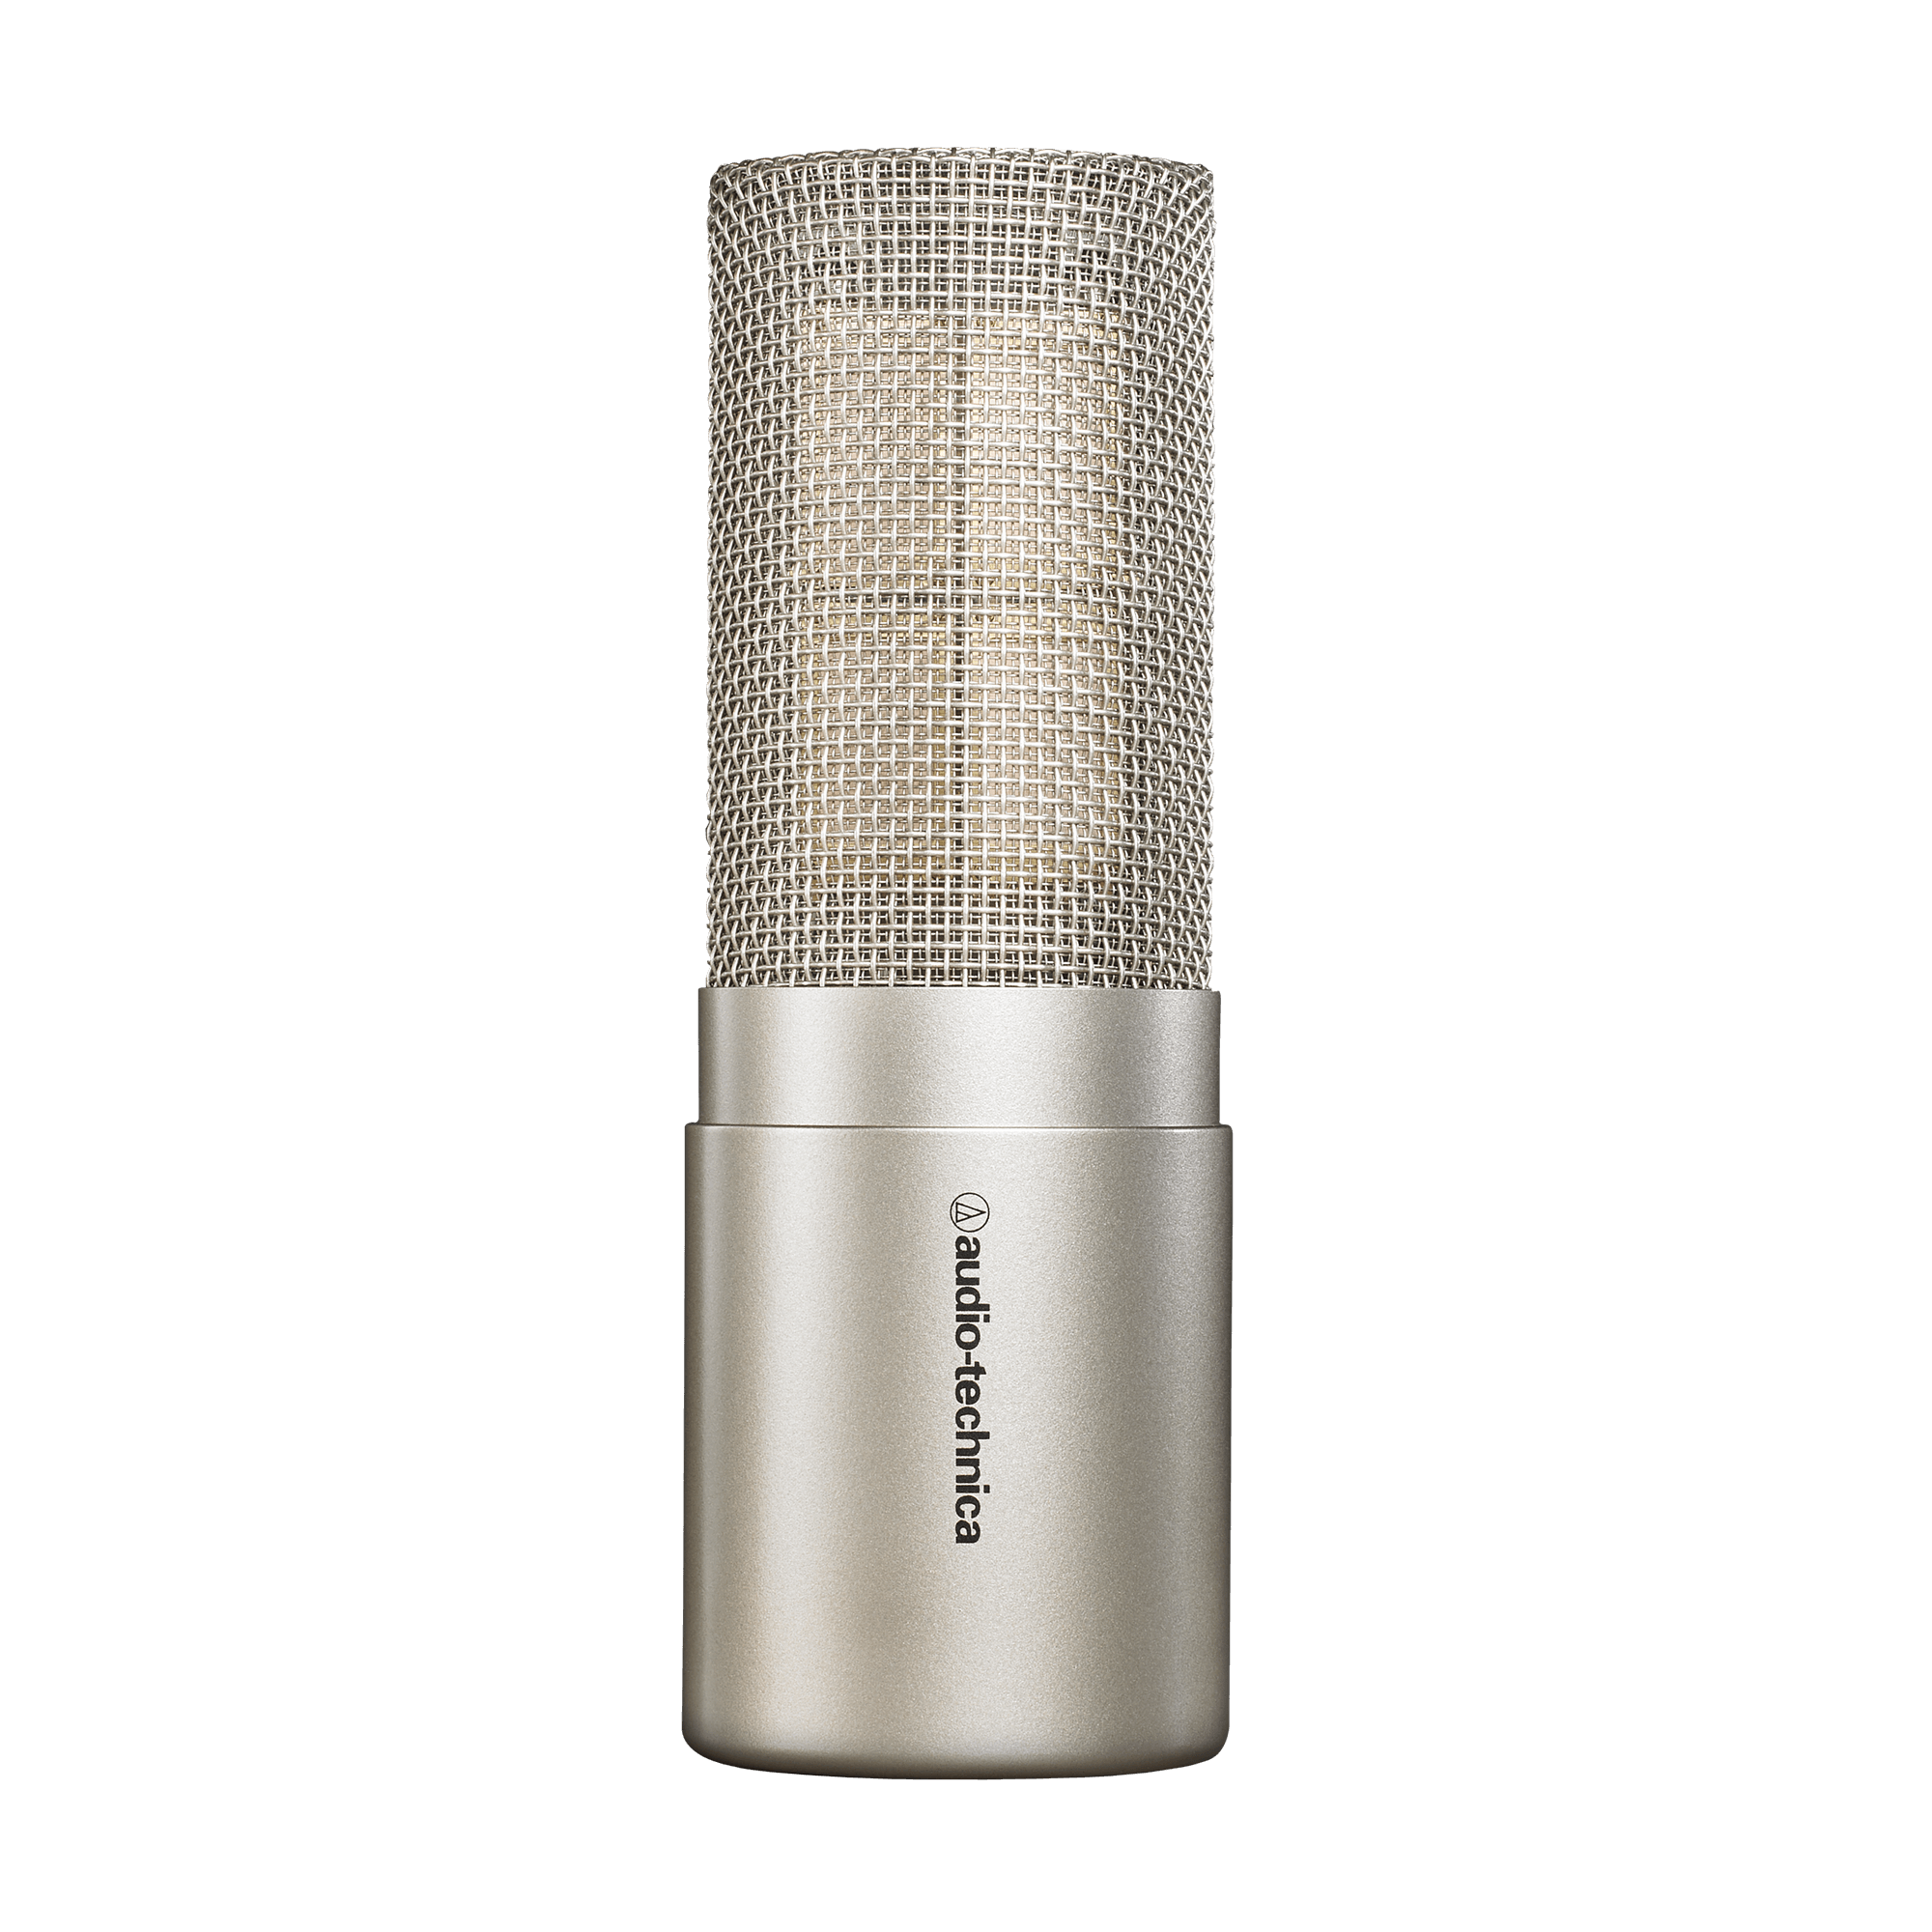 Microphone Studio à Condensateur Avec Directivité Cardioïde Mic250 - Toute l'offre  baladeur - Dictaphone BUT